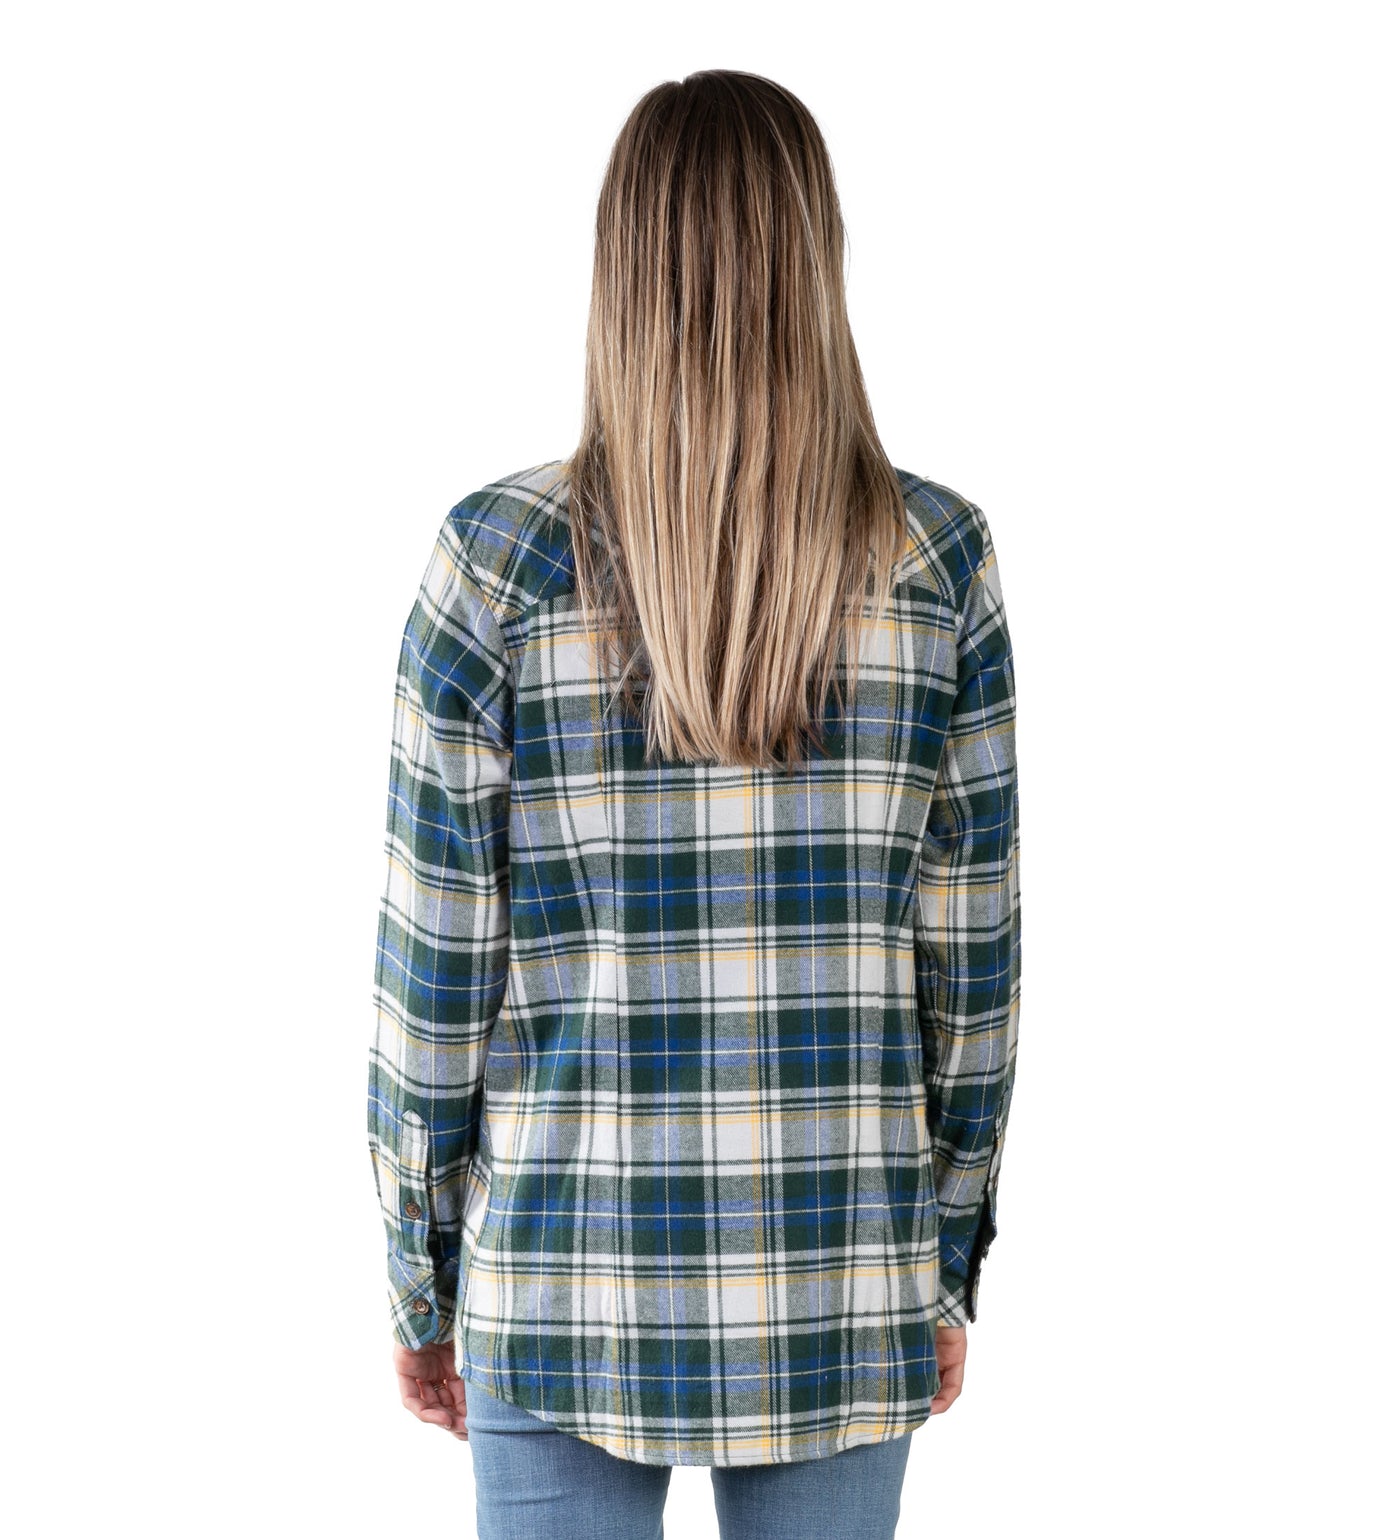 Women's Every Day Flannel Shirt- Aspen Green